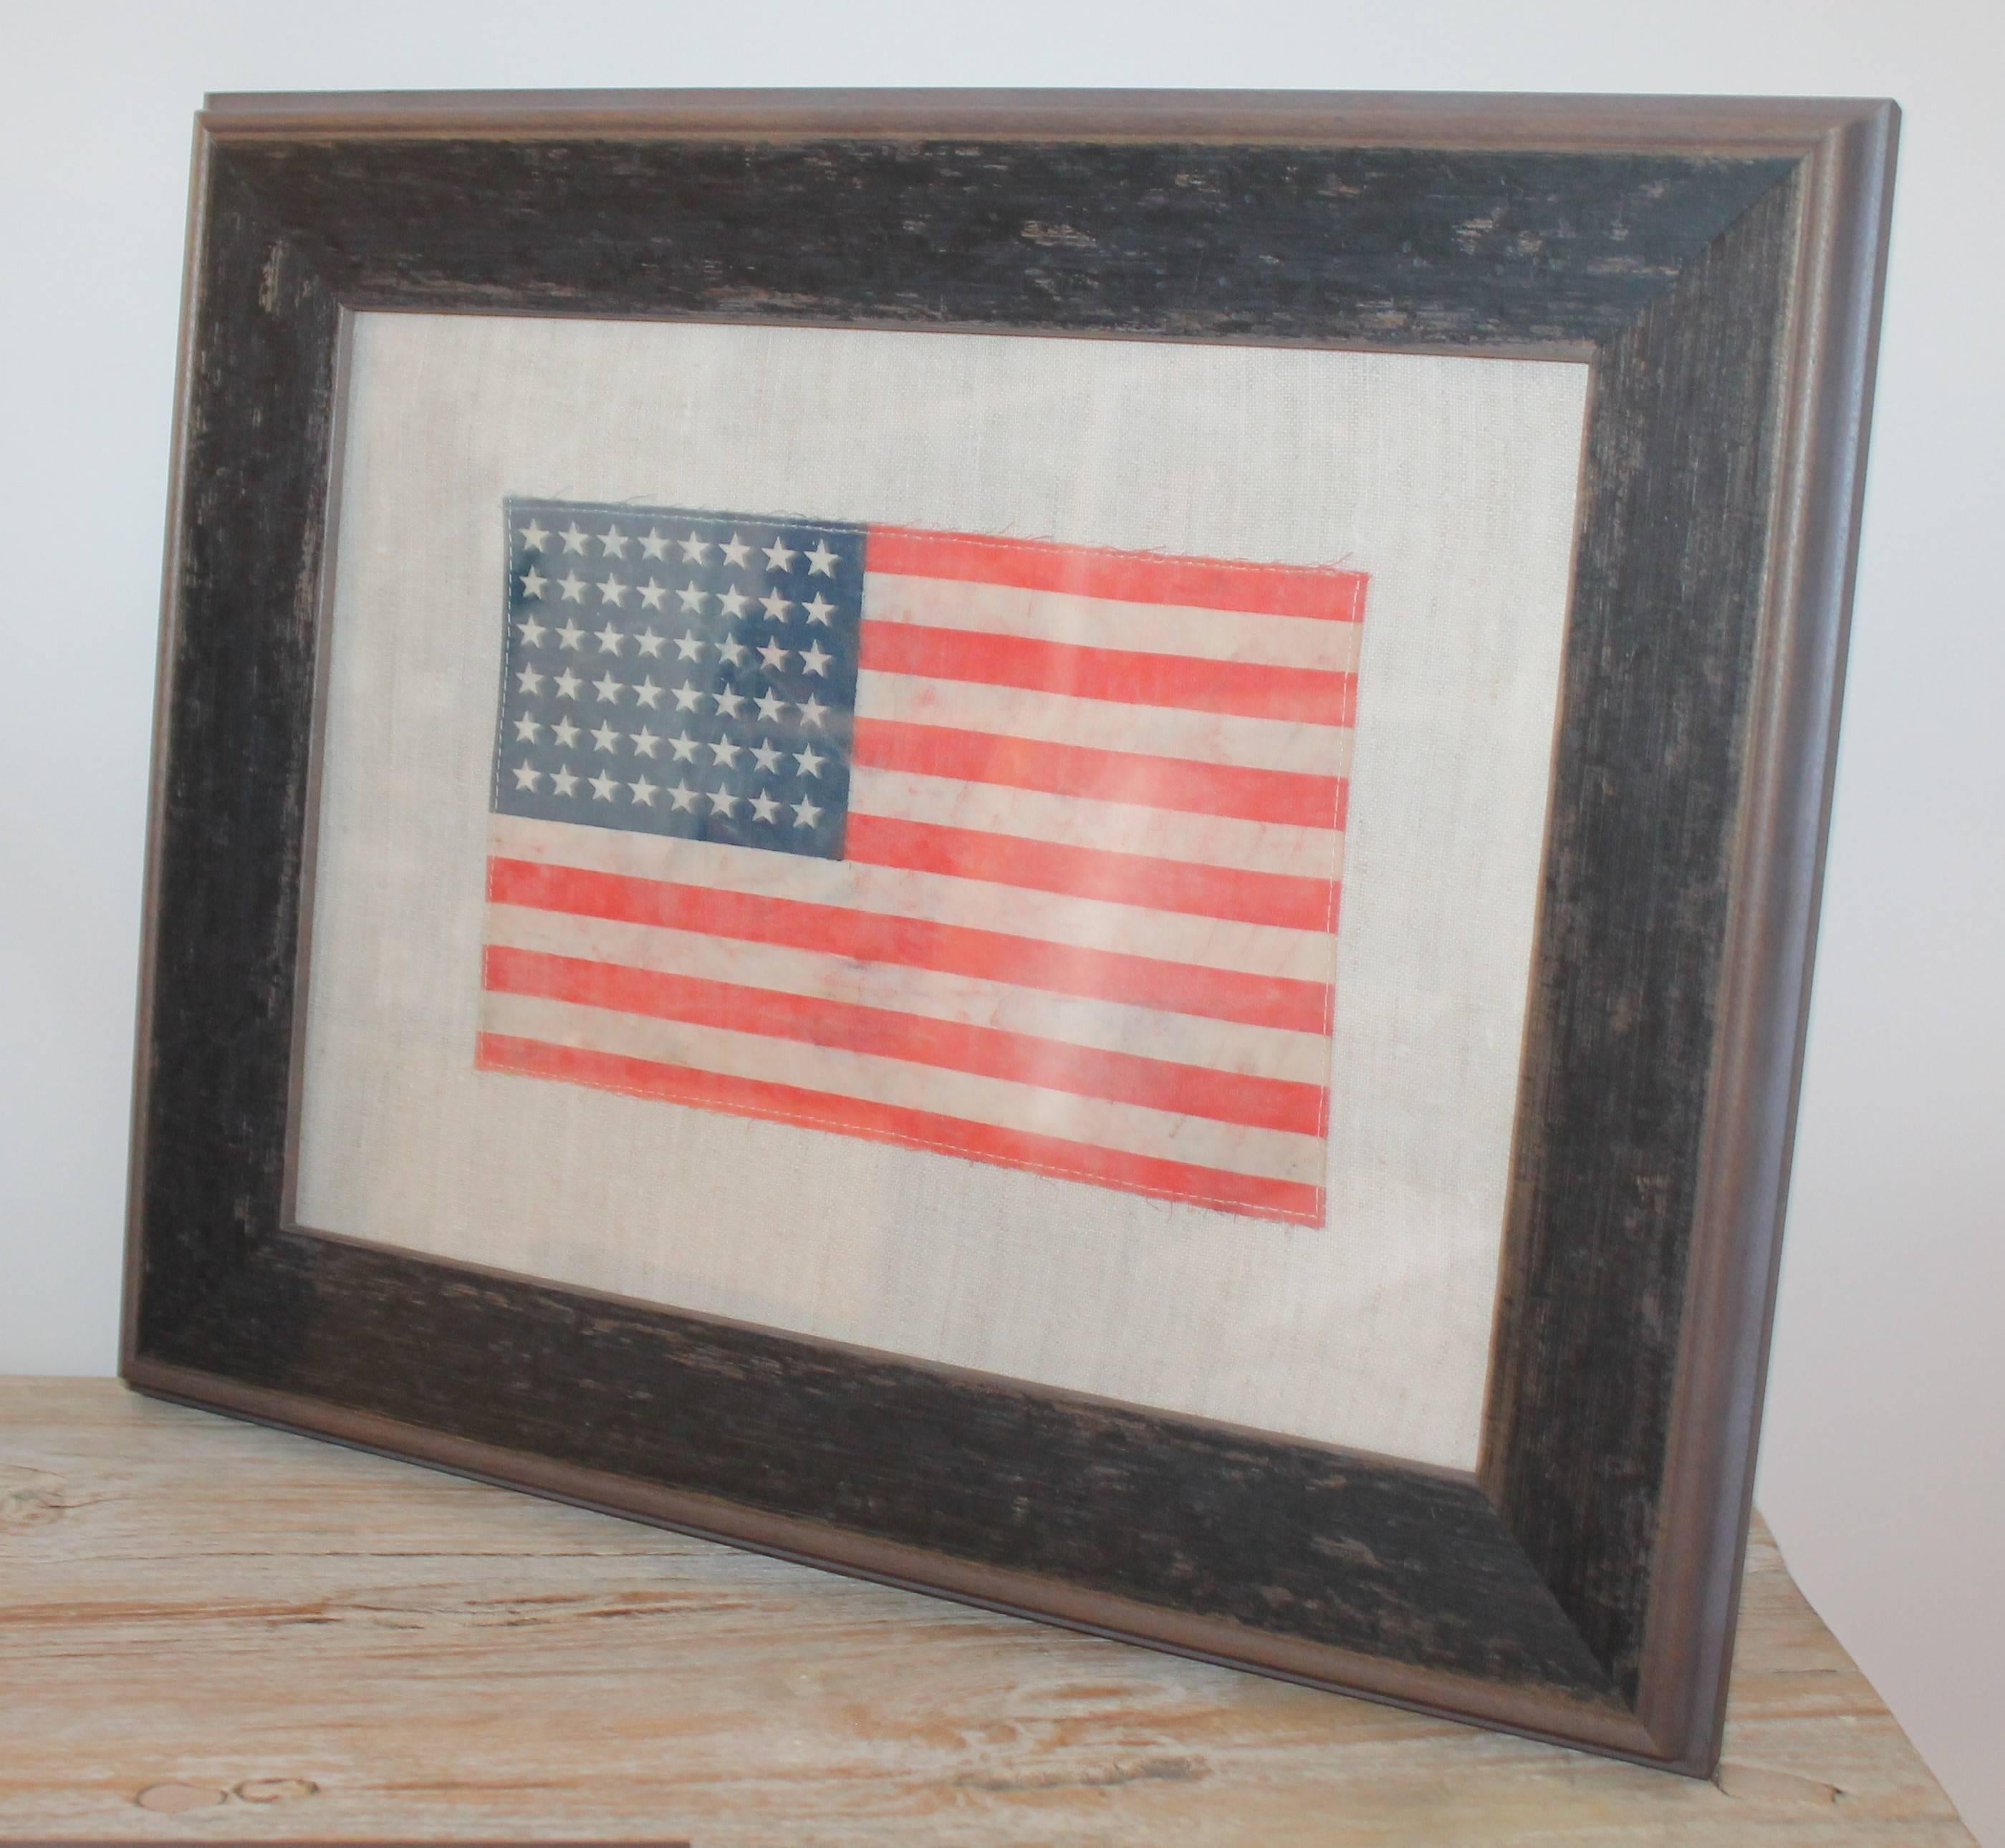 le drapeau 48 étoiles est fabriqué à partir d'une toile cirée vintage cousue sur du lin vintage. Le cadre est fait sur mesure pour chacun d'eux. Chacun mesure 14 x 17,5.

Si quelqu'un souhaite acheter les trois, nous offrons les trois à 2 295